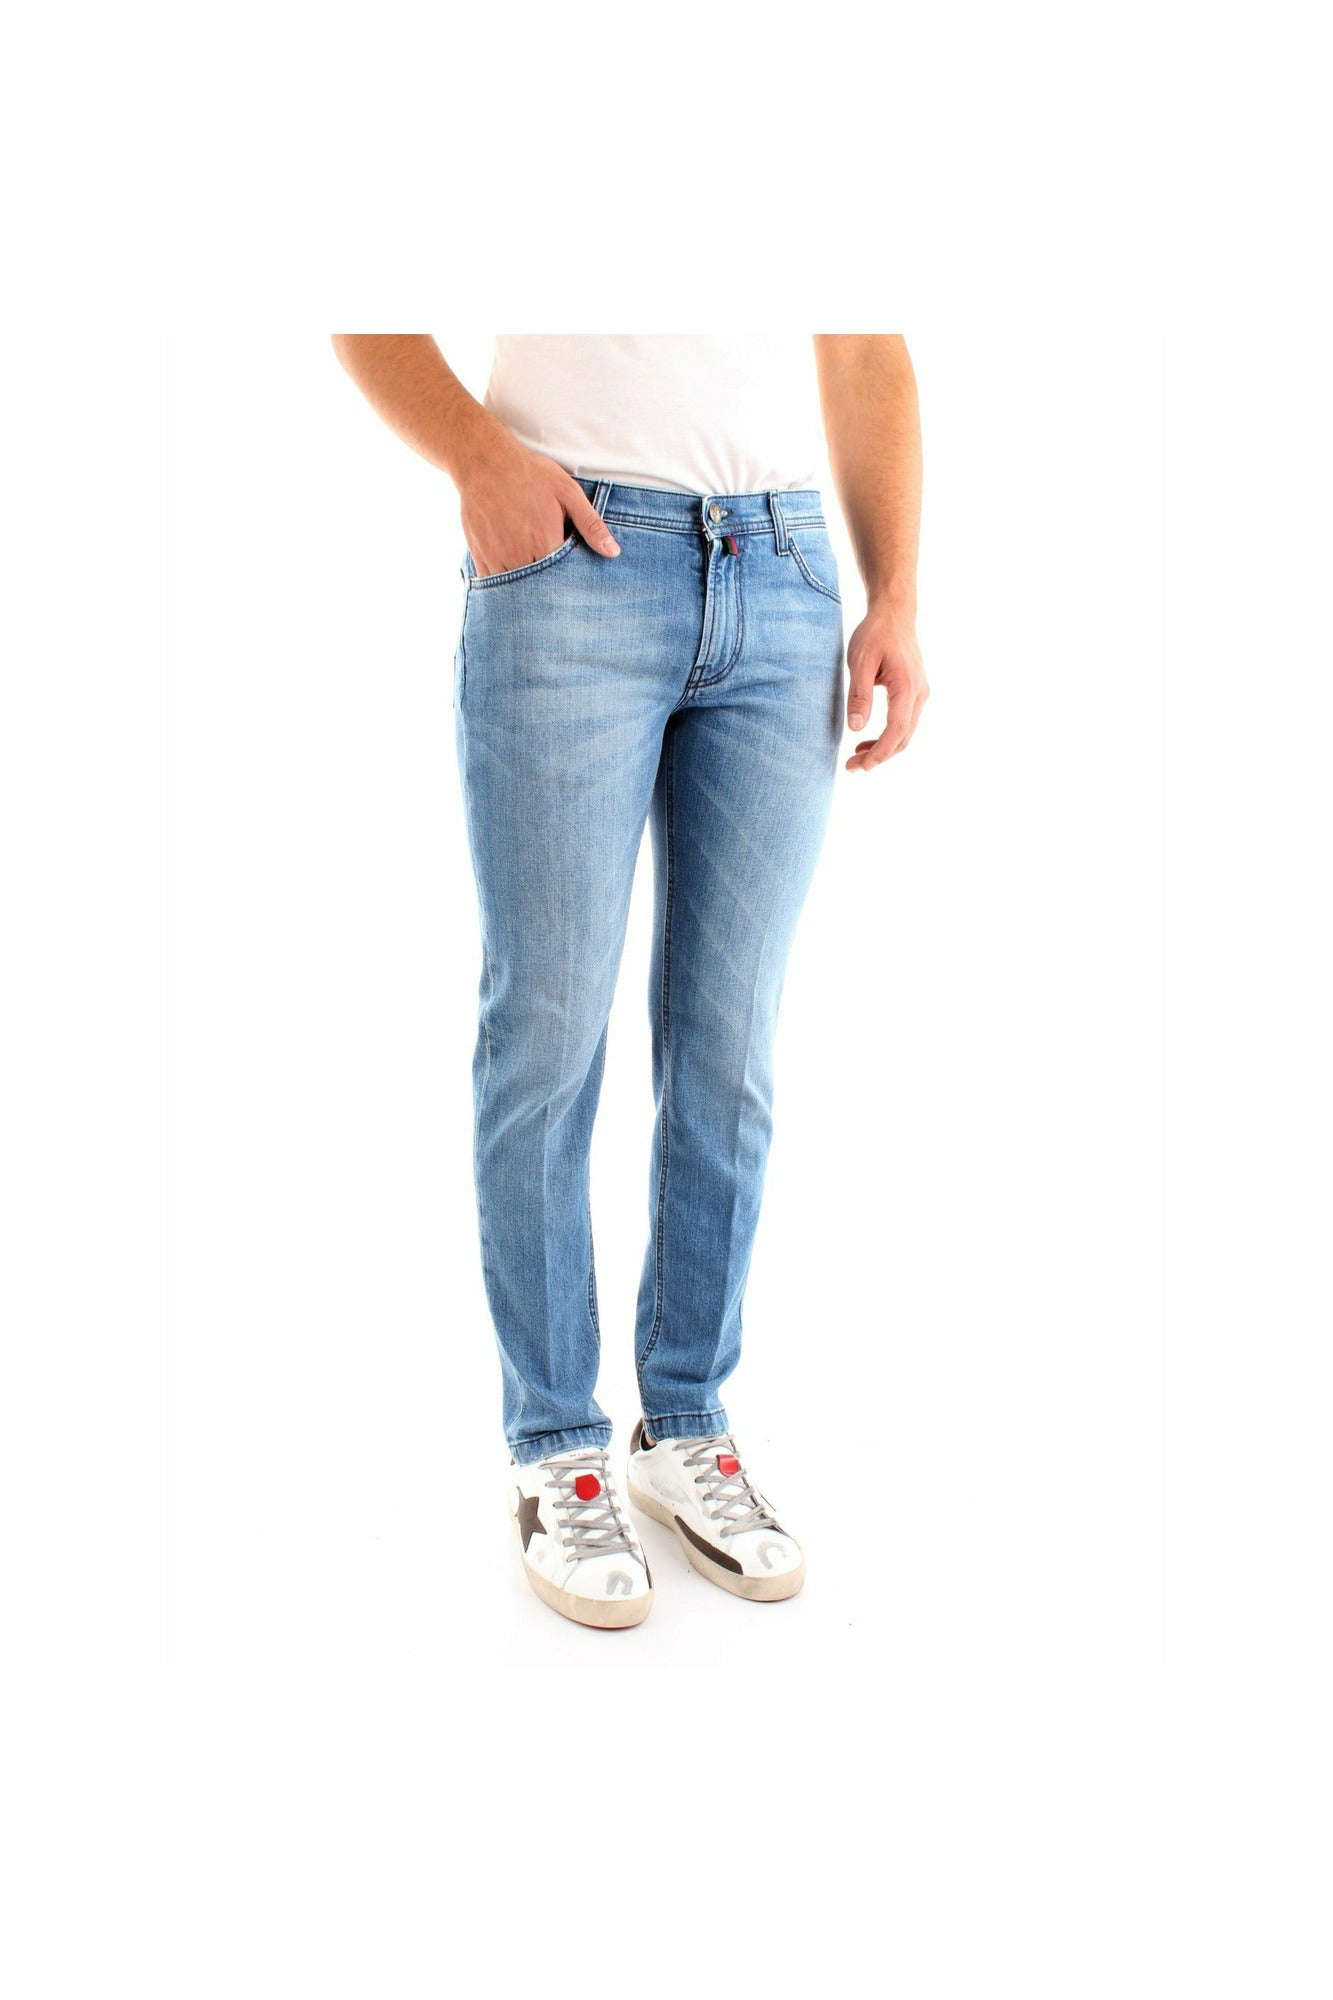 BSETTECENTO L702-2035AI21204 jeans slim fit modello cinque tasche